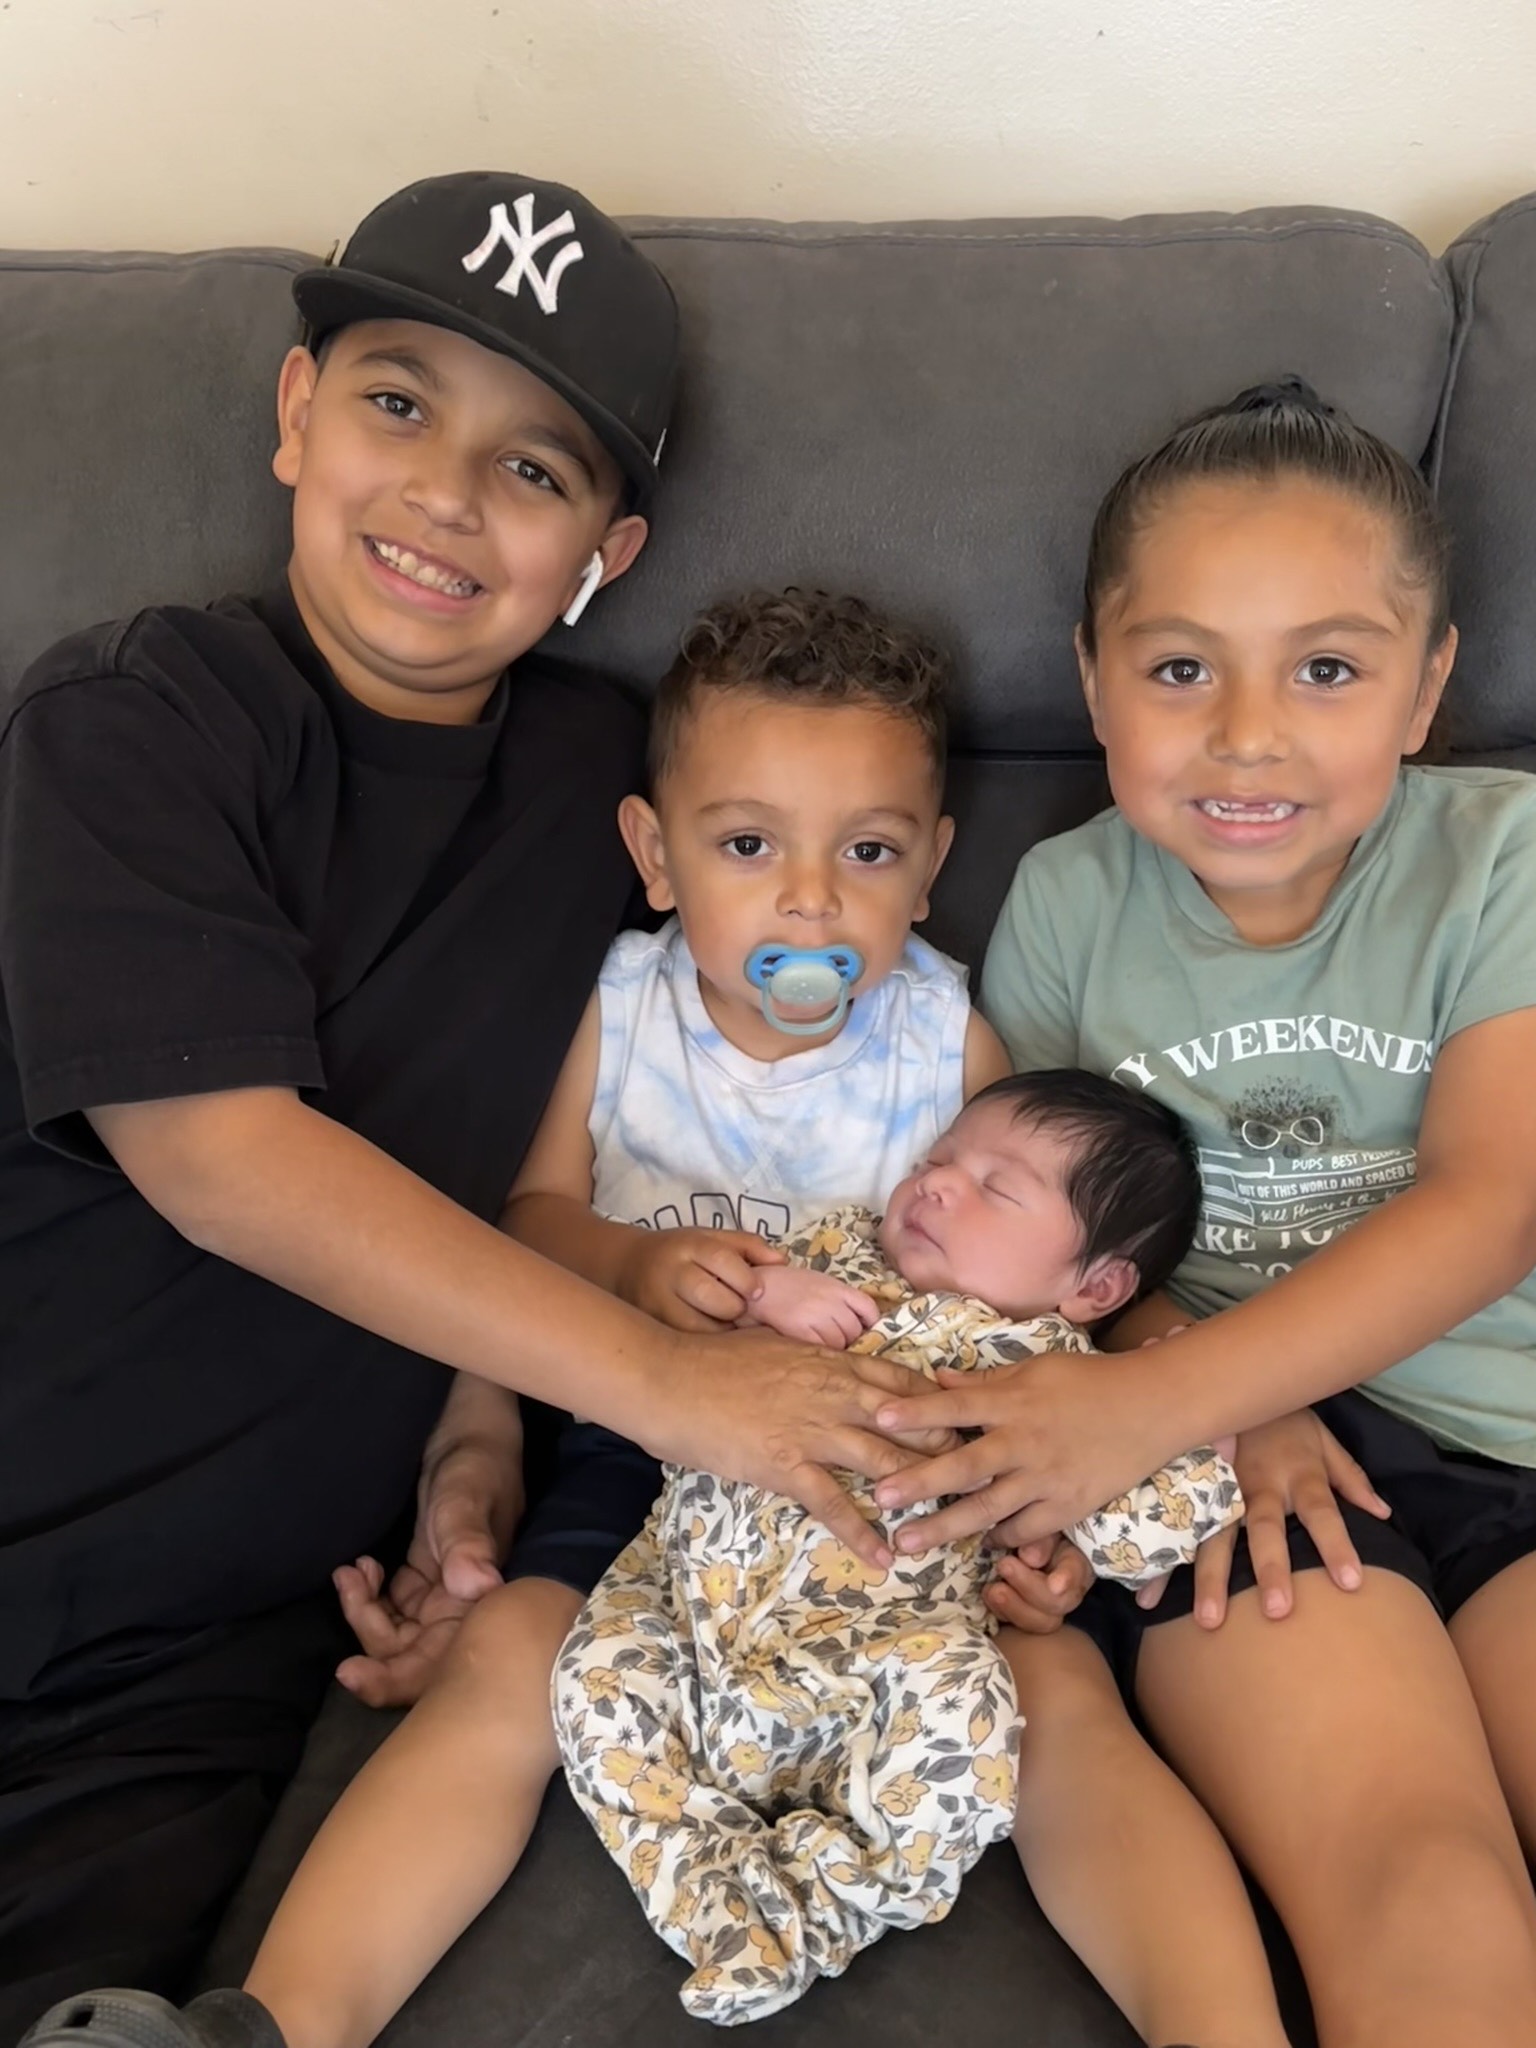 Noah and his three siblings